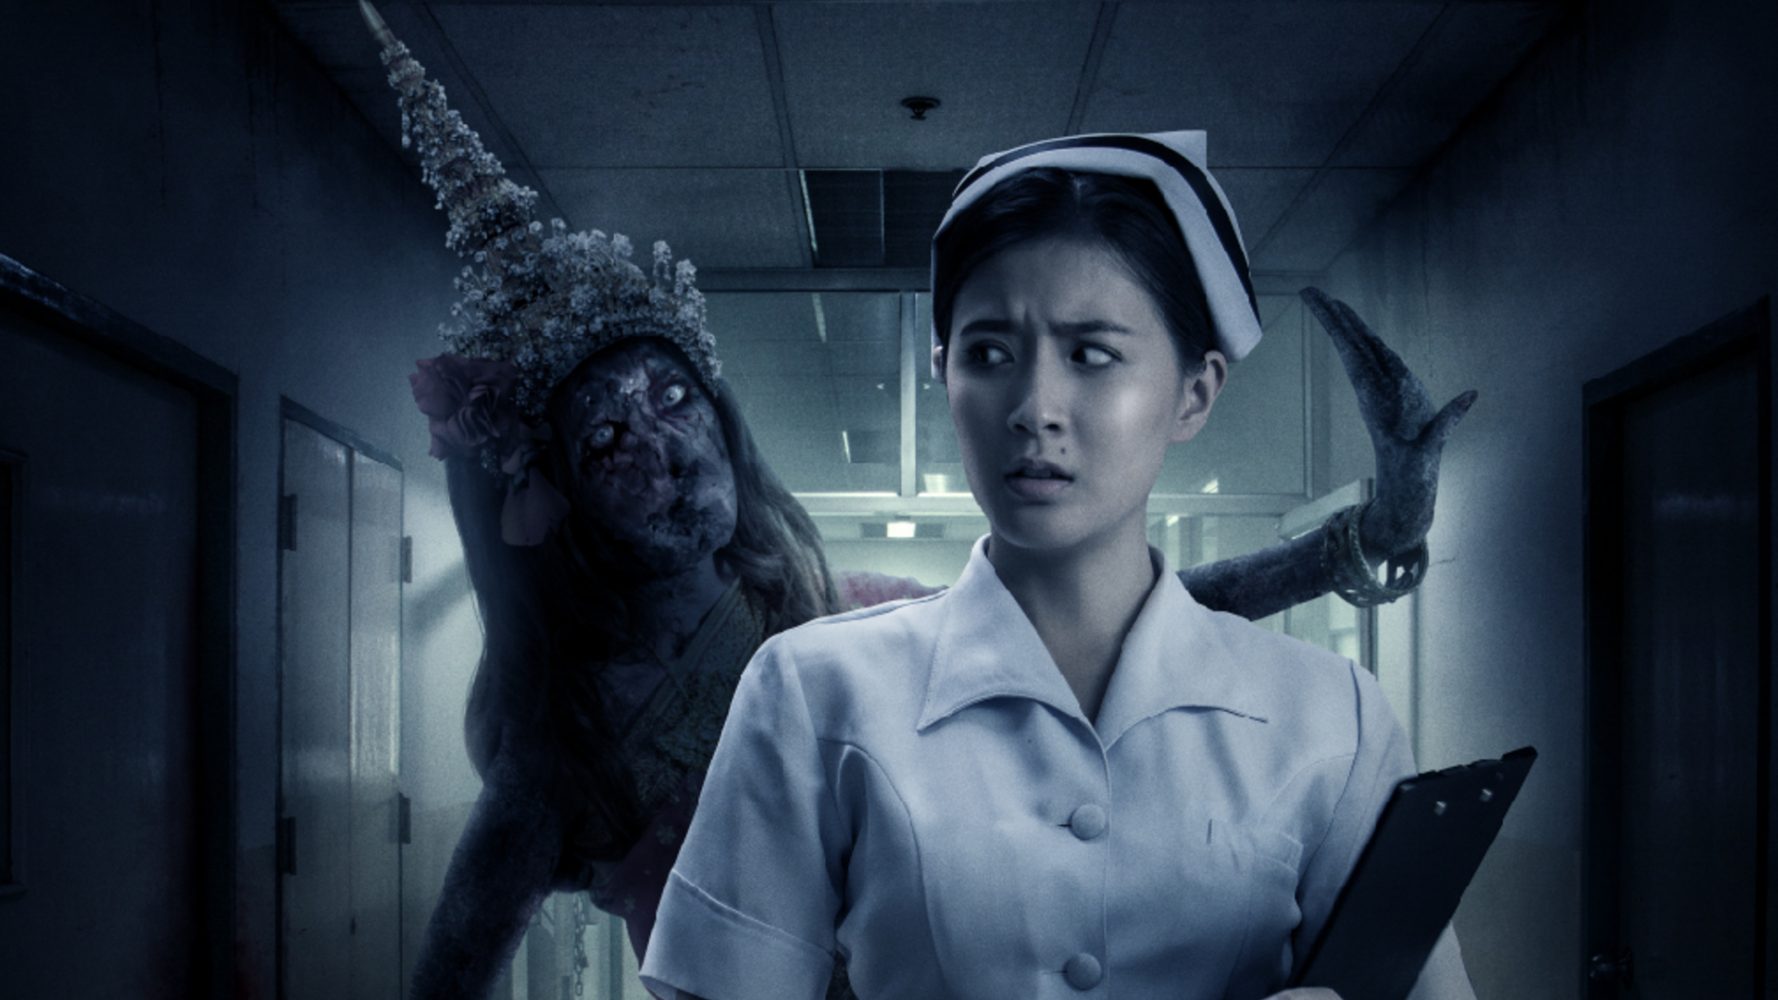 Top những bộ phim ma Thái Lan hay nhất: Chuyện ma lúc 3 giờ sáng - 3AM Bangkok ghost stories (2018)